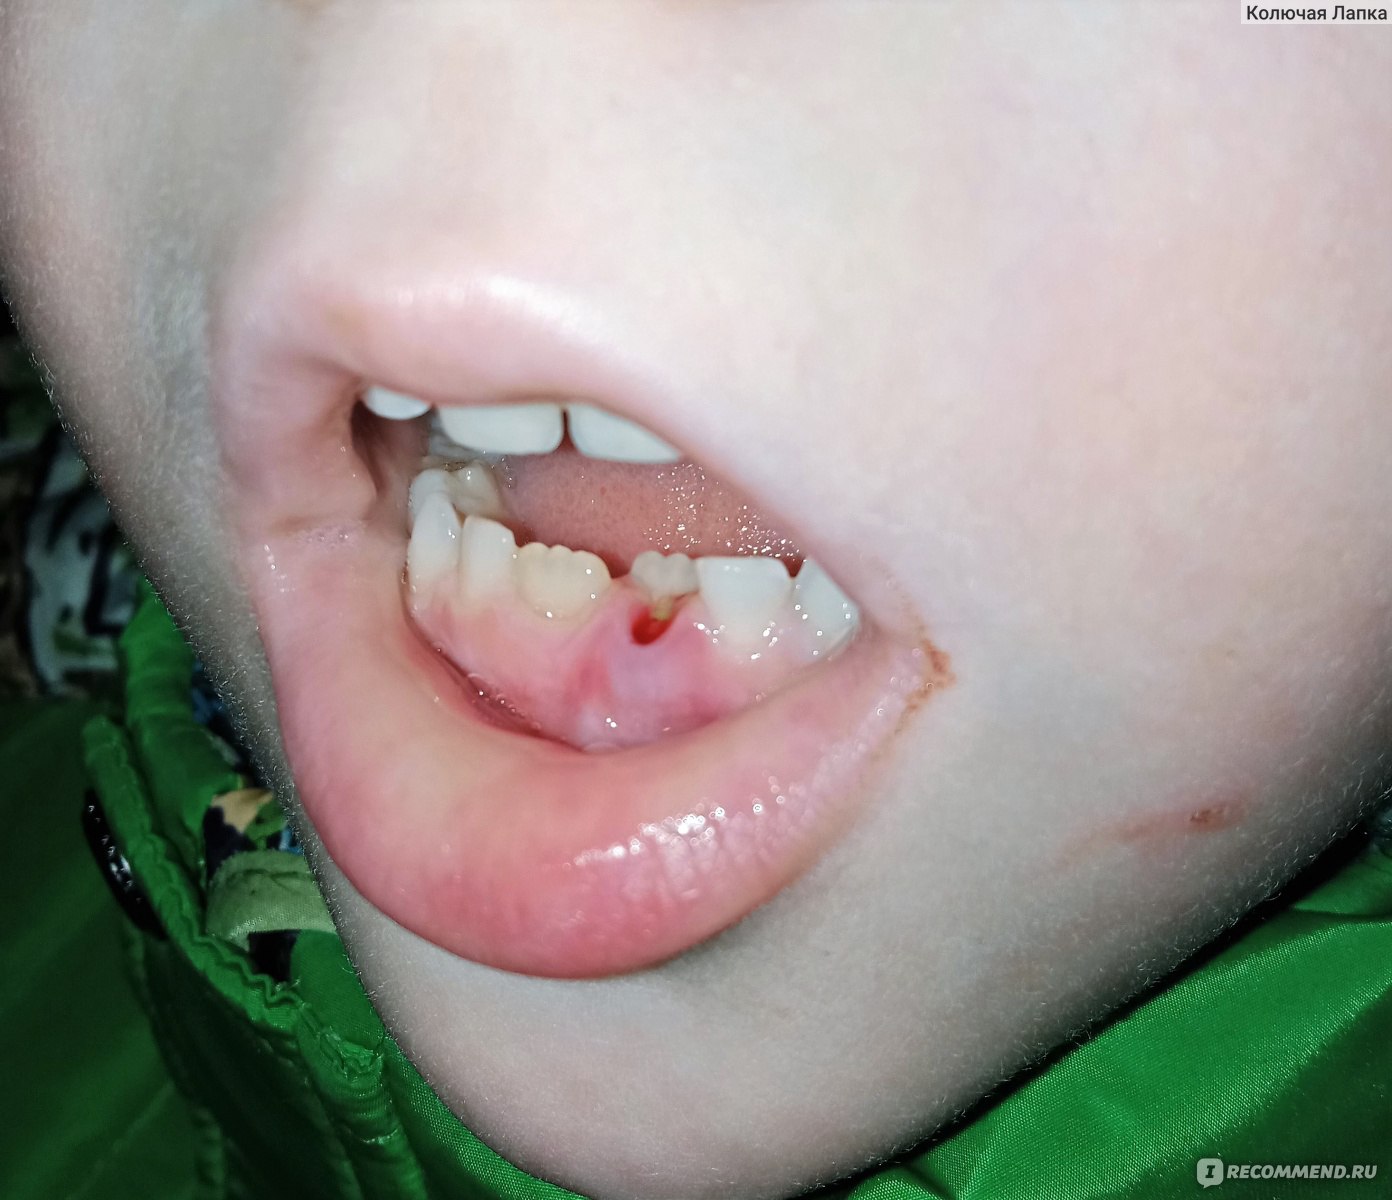 Вашему ребенку удалили зуб. Что важно?